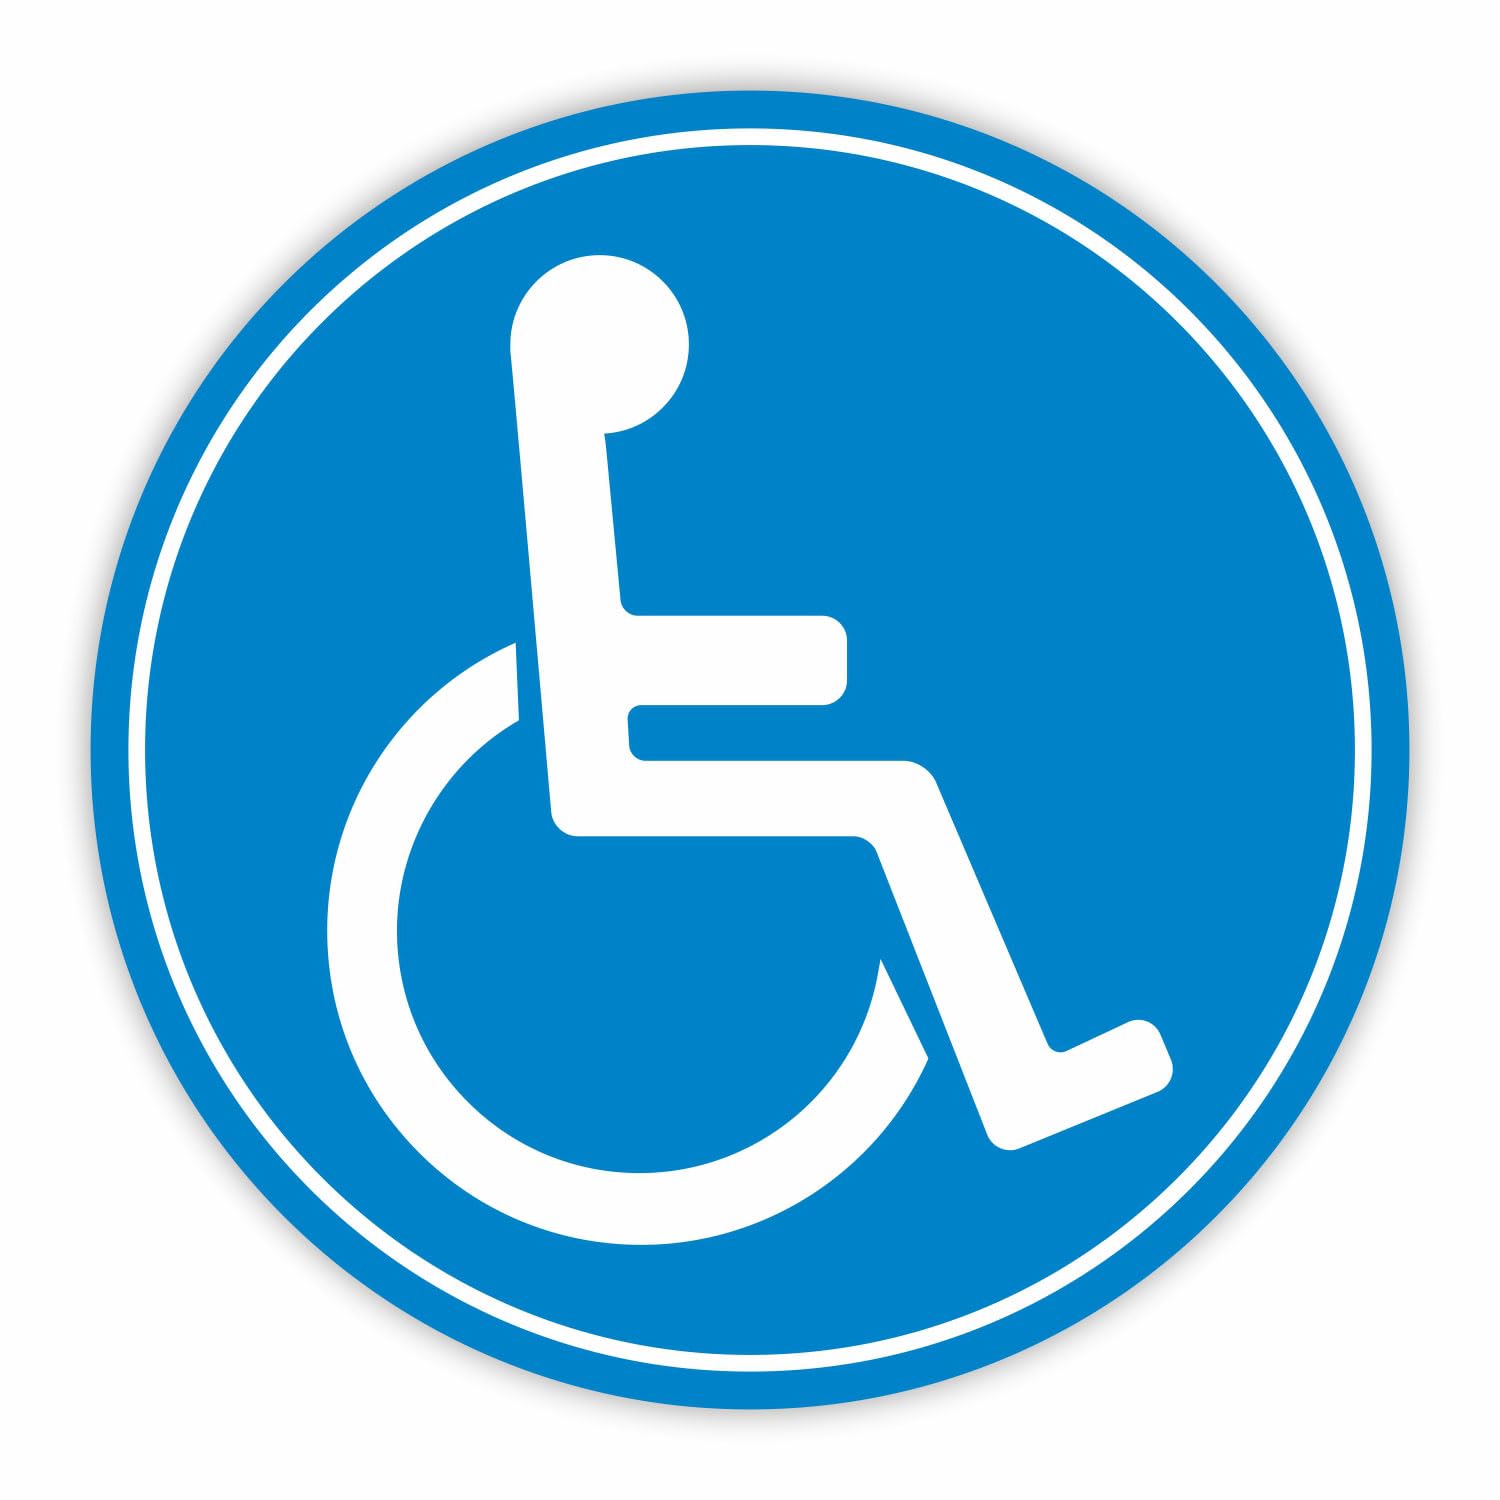 iSecur Rollstuhl-Aufkleber I kfz_076 I Ø 20 cm I Behinderten-Aufkleber für Auto, Behinderten-Transport, Rollstuhl-Fahrer I Wetterfest außen-klebend von iSecur